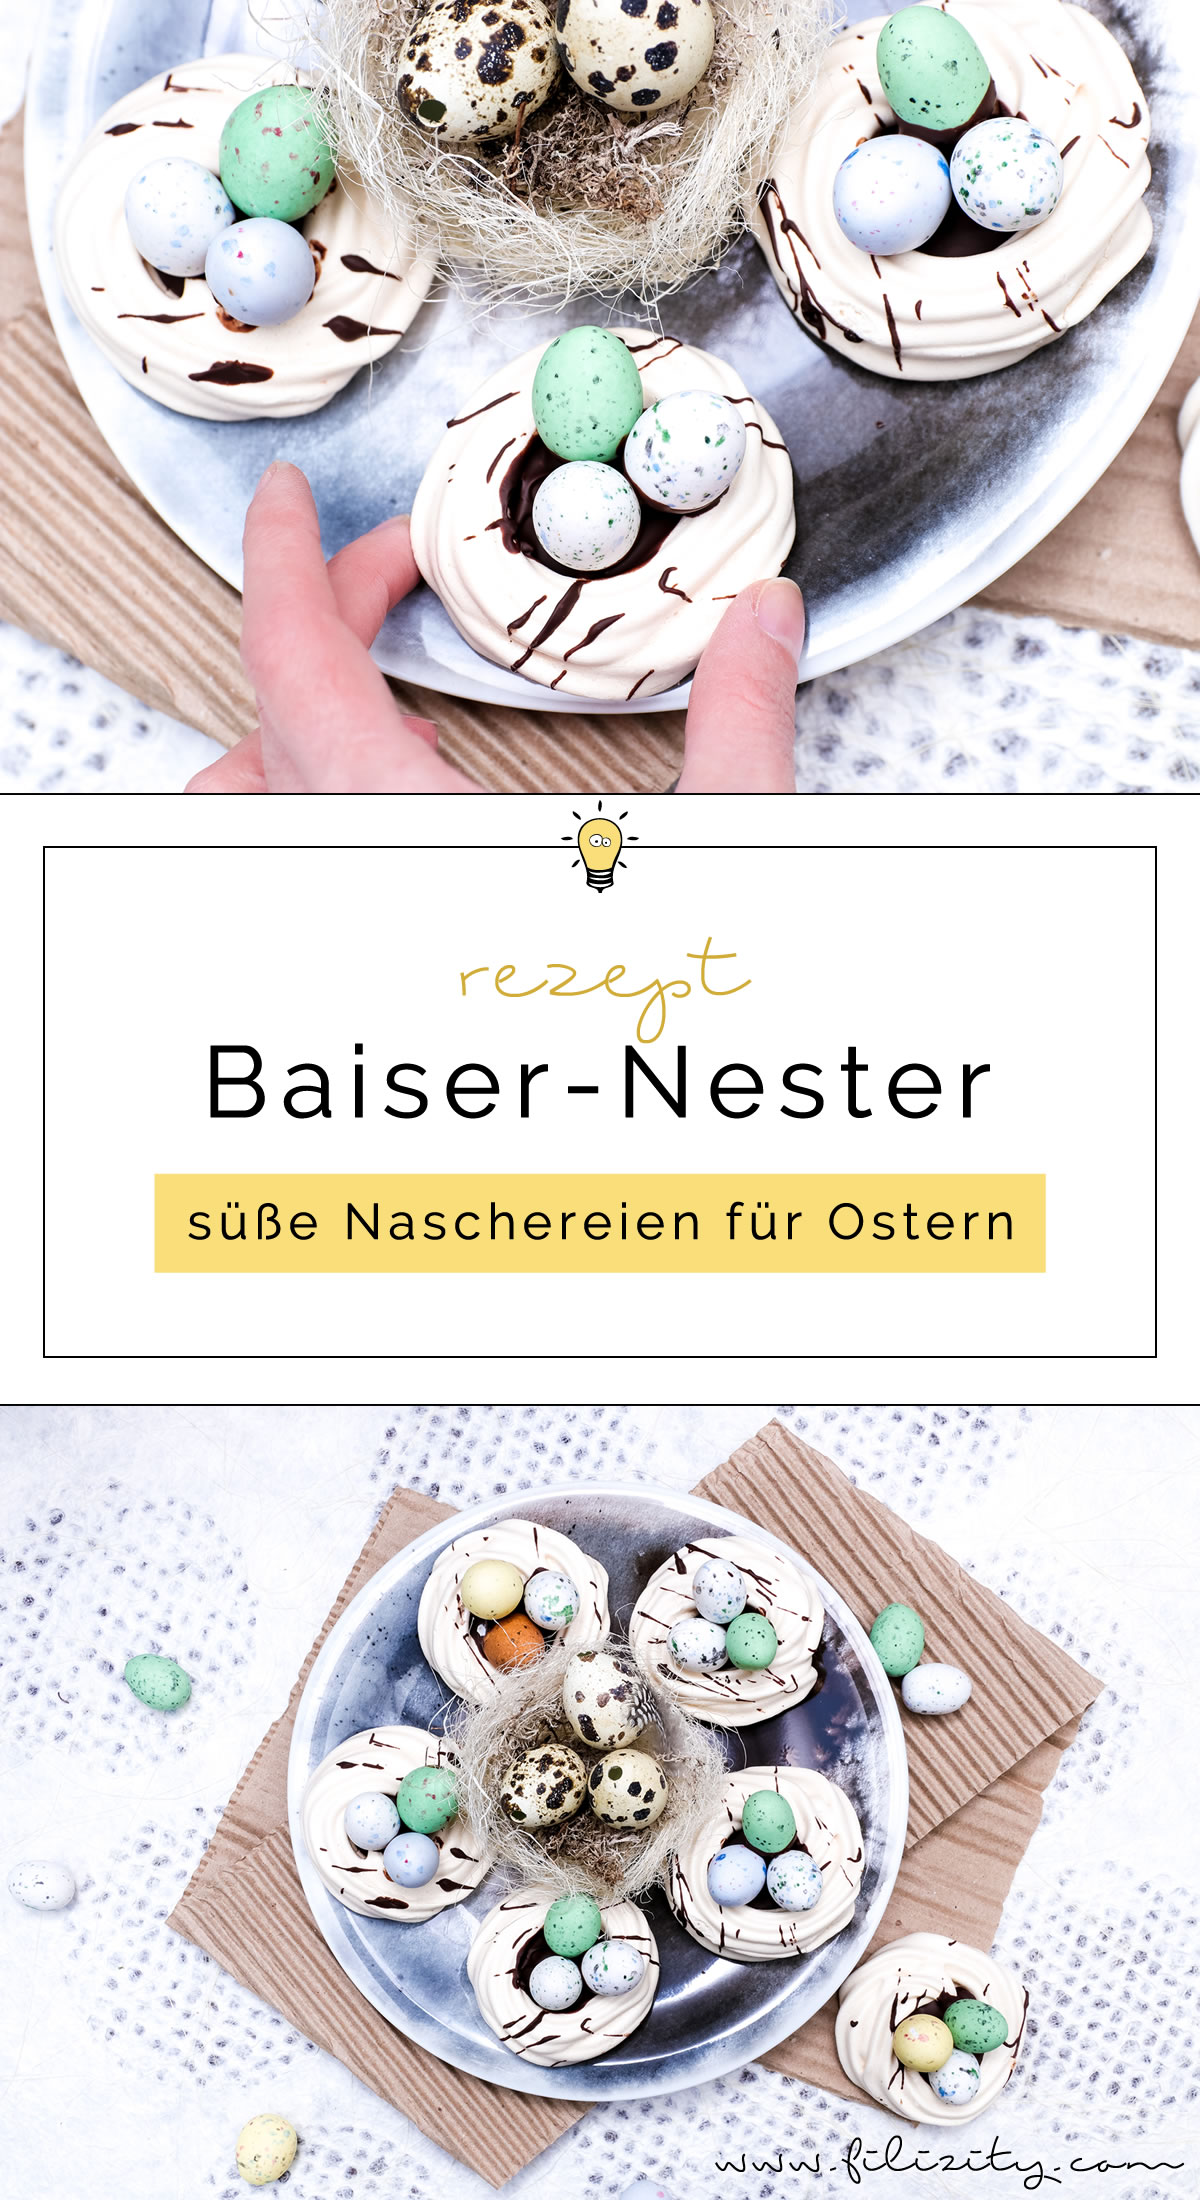 *~*  Baiser Osternester in dekorativer Schachtel   *~* 